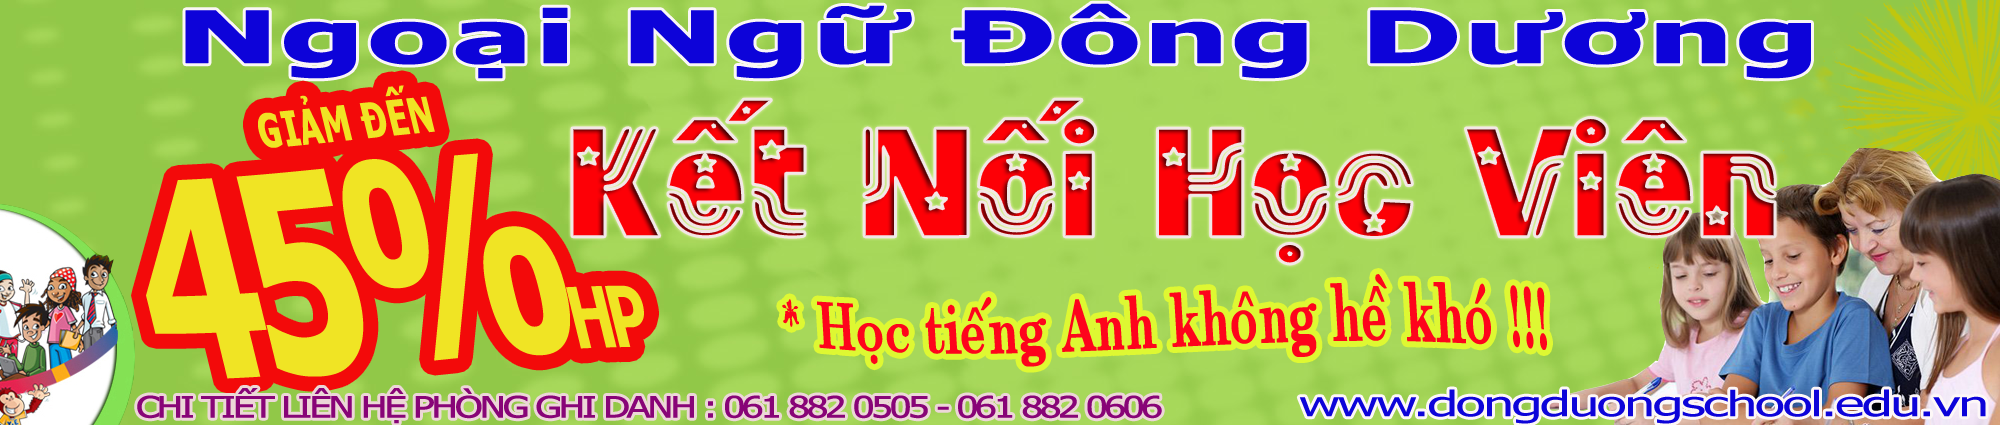 NGOẠI NGỮ ĐÔNG DƯƠNG : Trung tâm anh ngữ dạy tiếng Anh giao tiếp chất lượng ở Biên Hòa